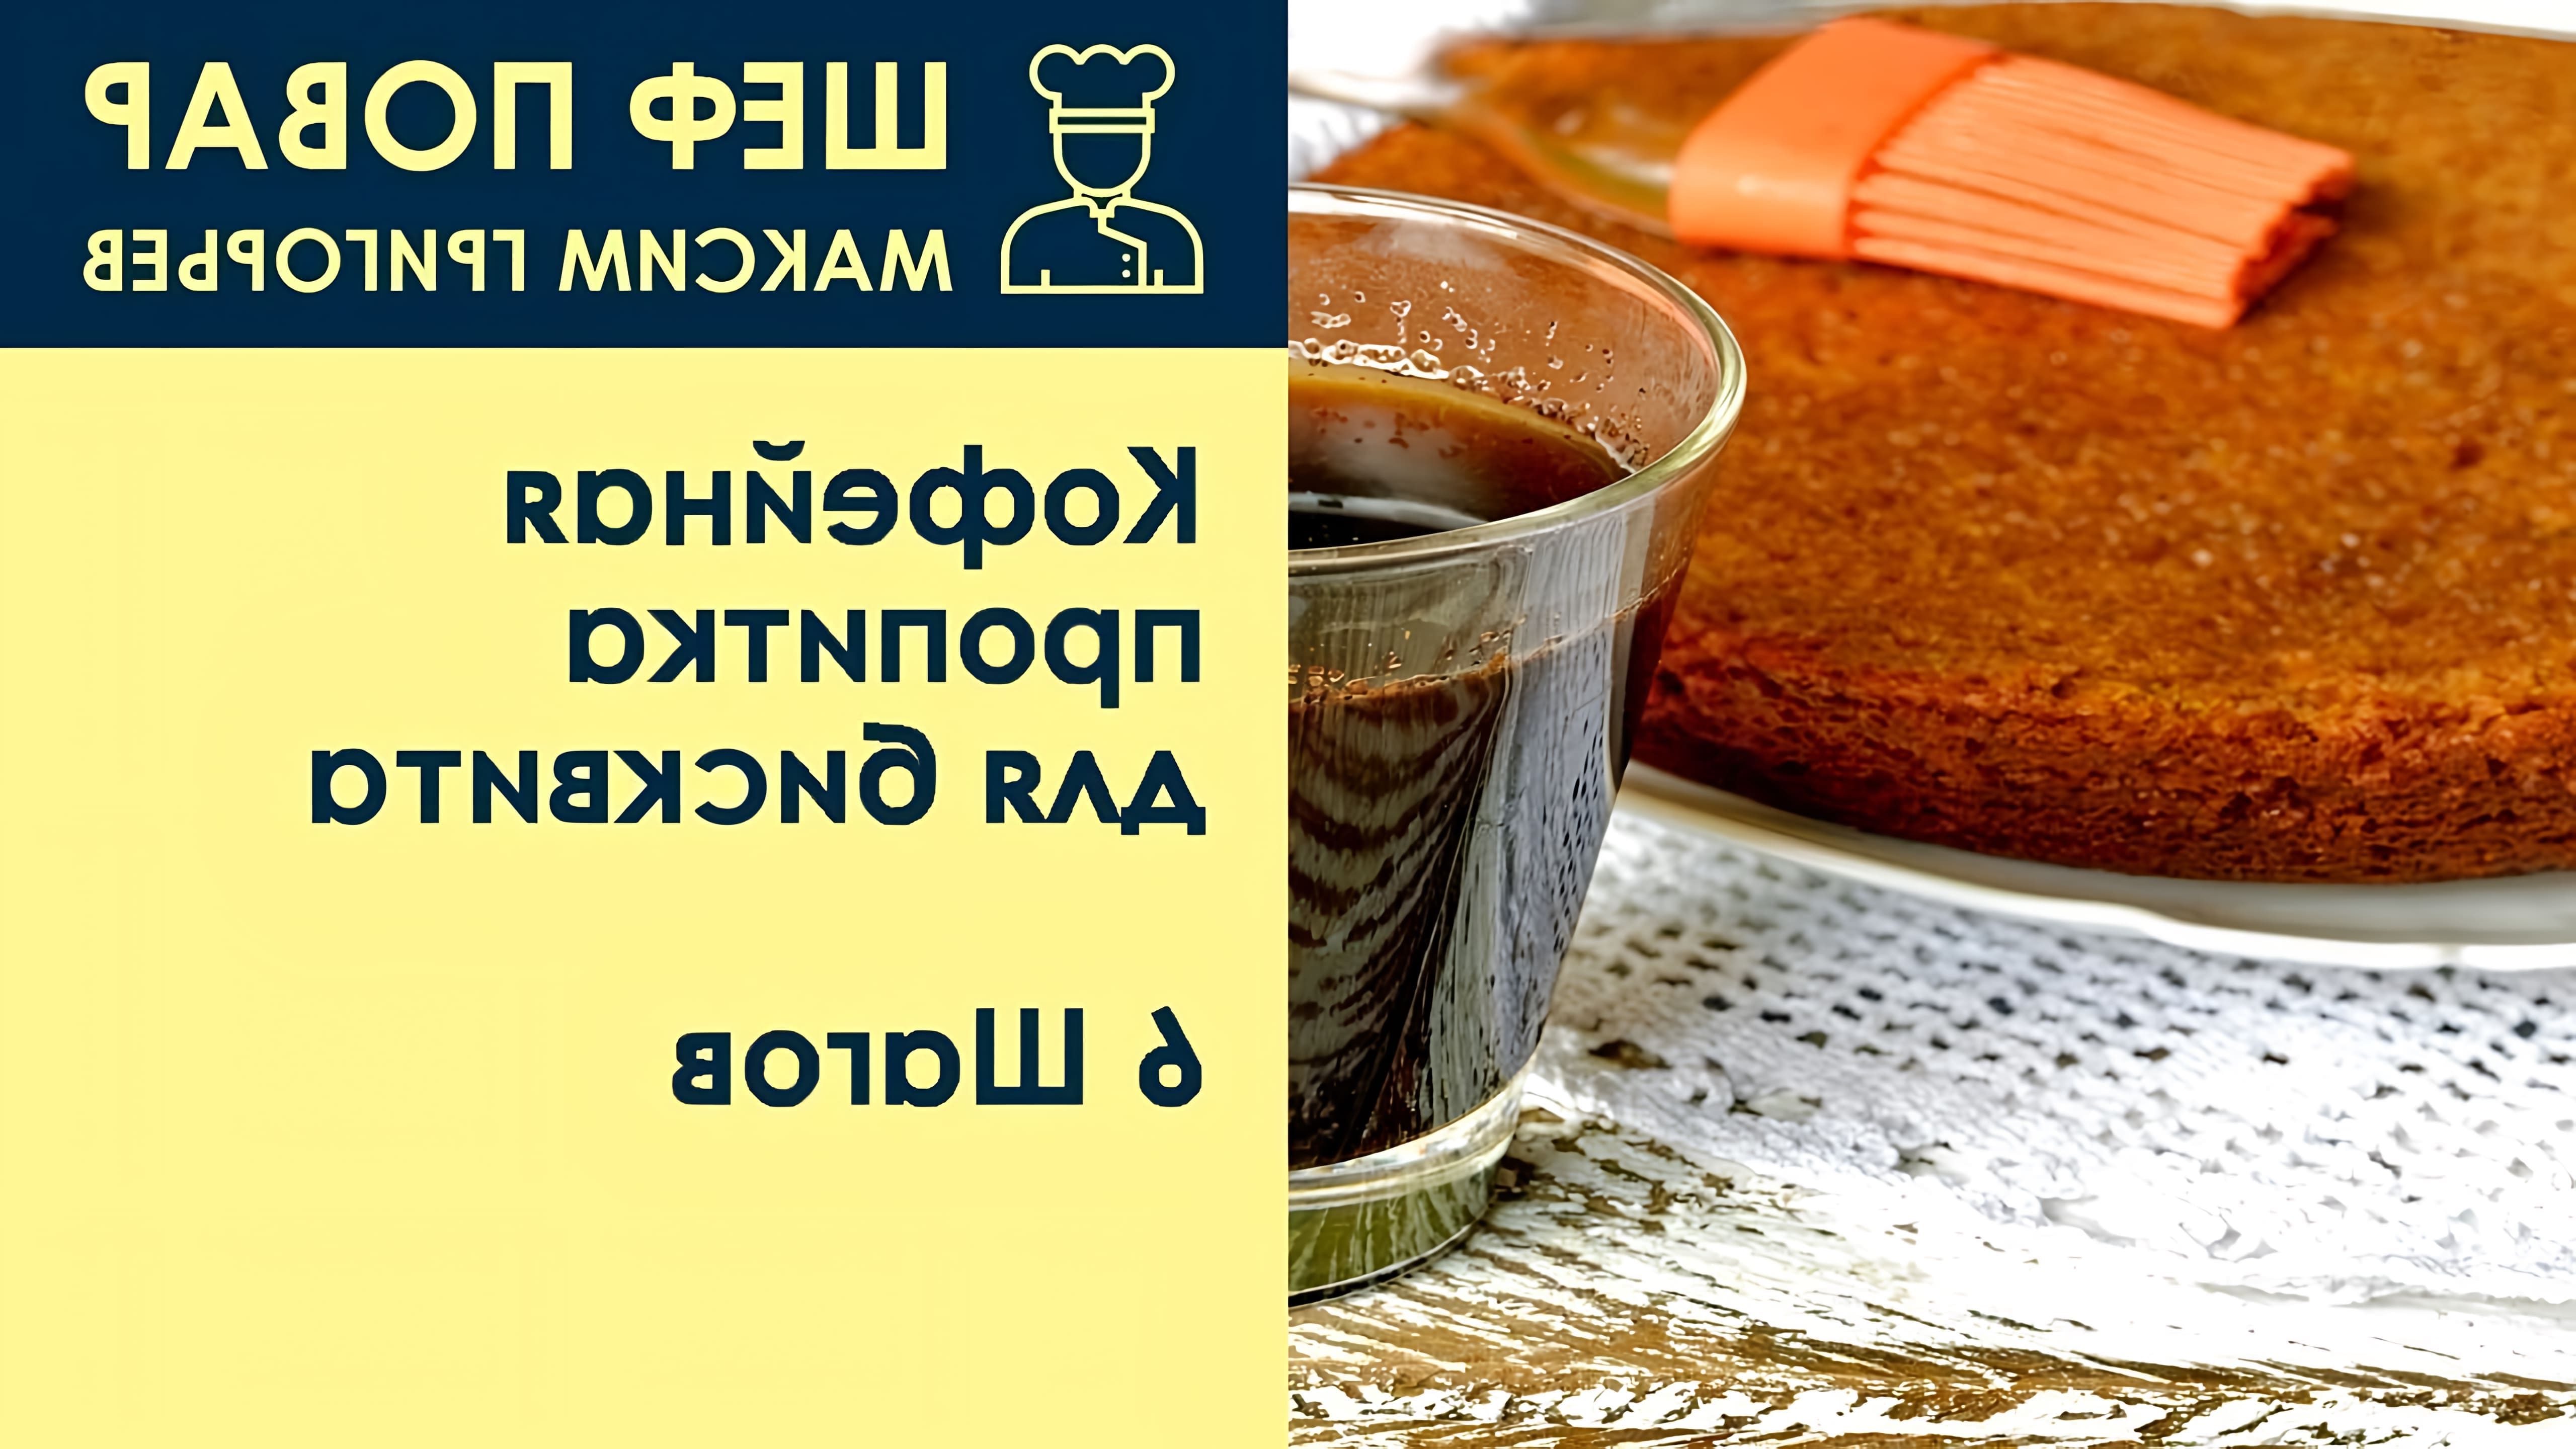 В данном видео шеф-повар Максим Григорьев демонстрирует рецепт кофейной пропитки для бисквита